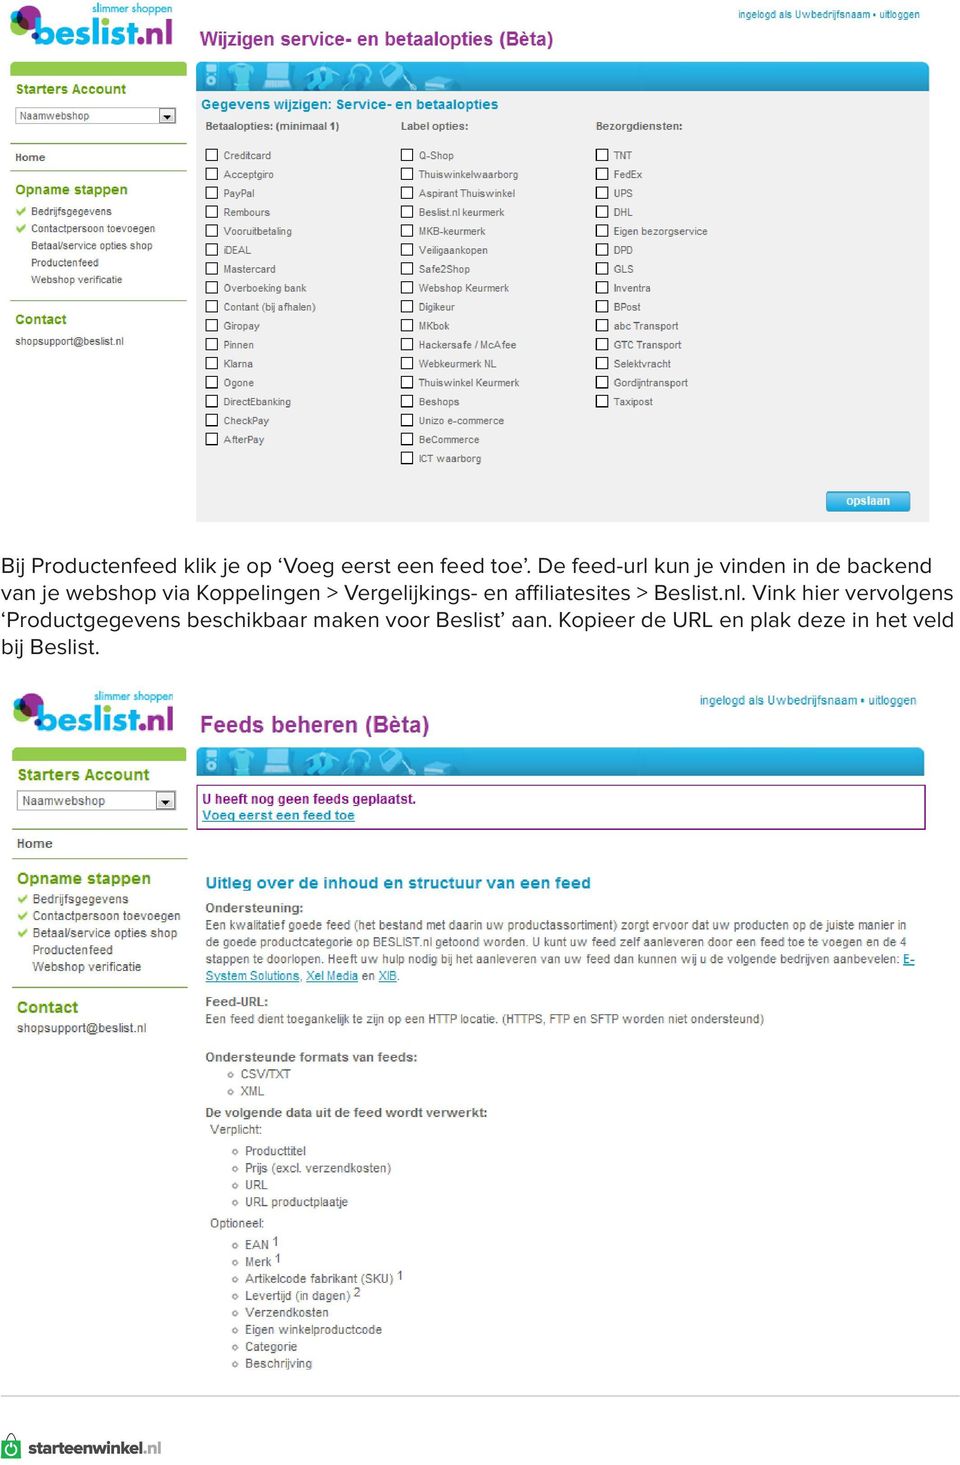 Vergelijkings- en affiliatesites > Beslist.nl.